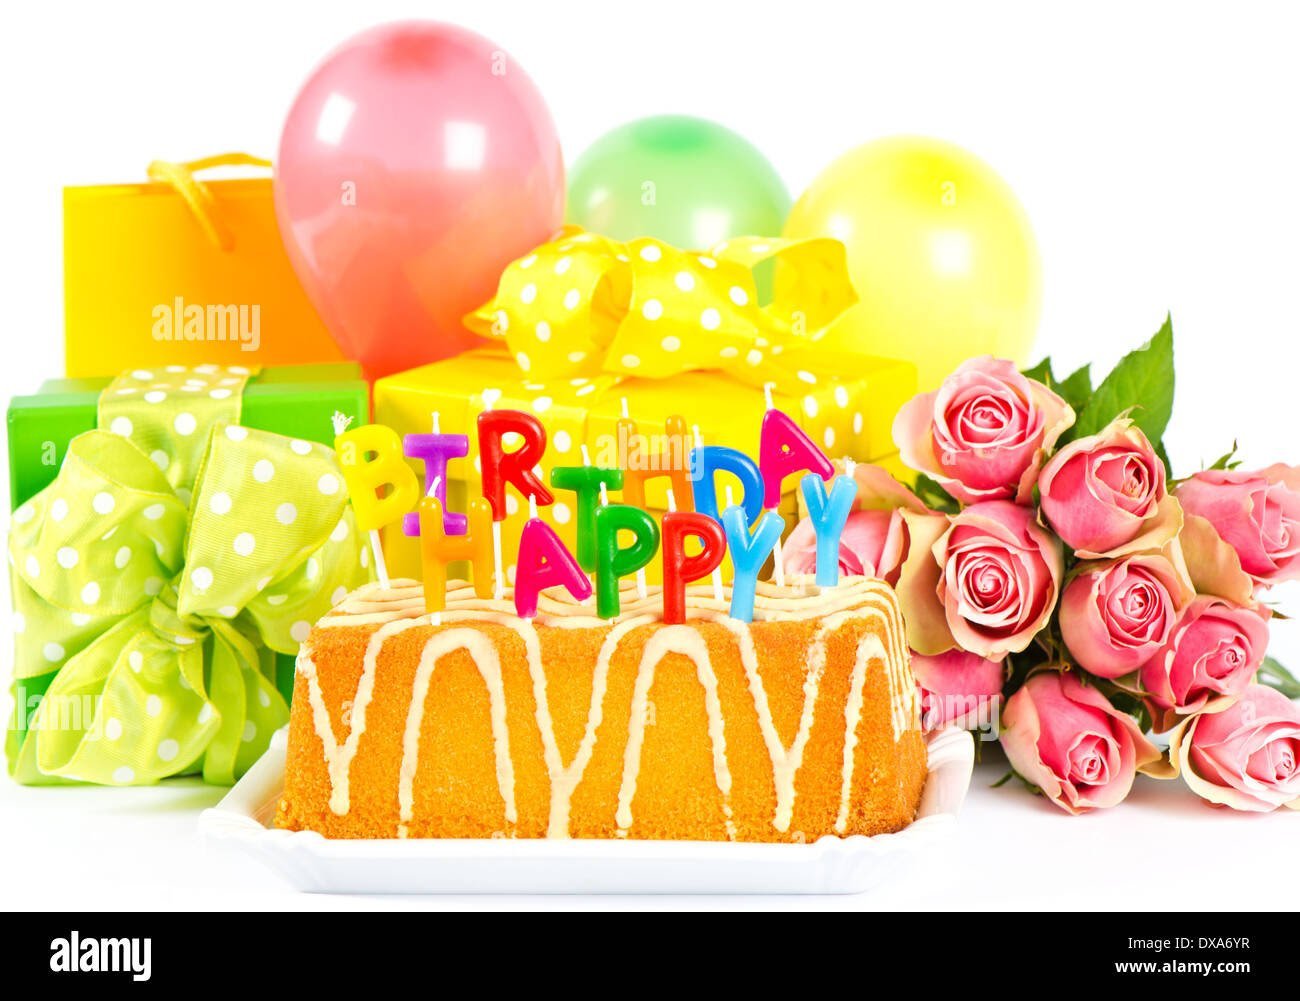 Открытка торт с днем рождения женщине. Открытка с днём рождения торт. Торт шарики цветы. Красивые шары на день рождения. Торт подарок на день рождения.